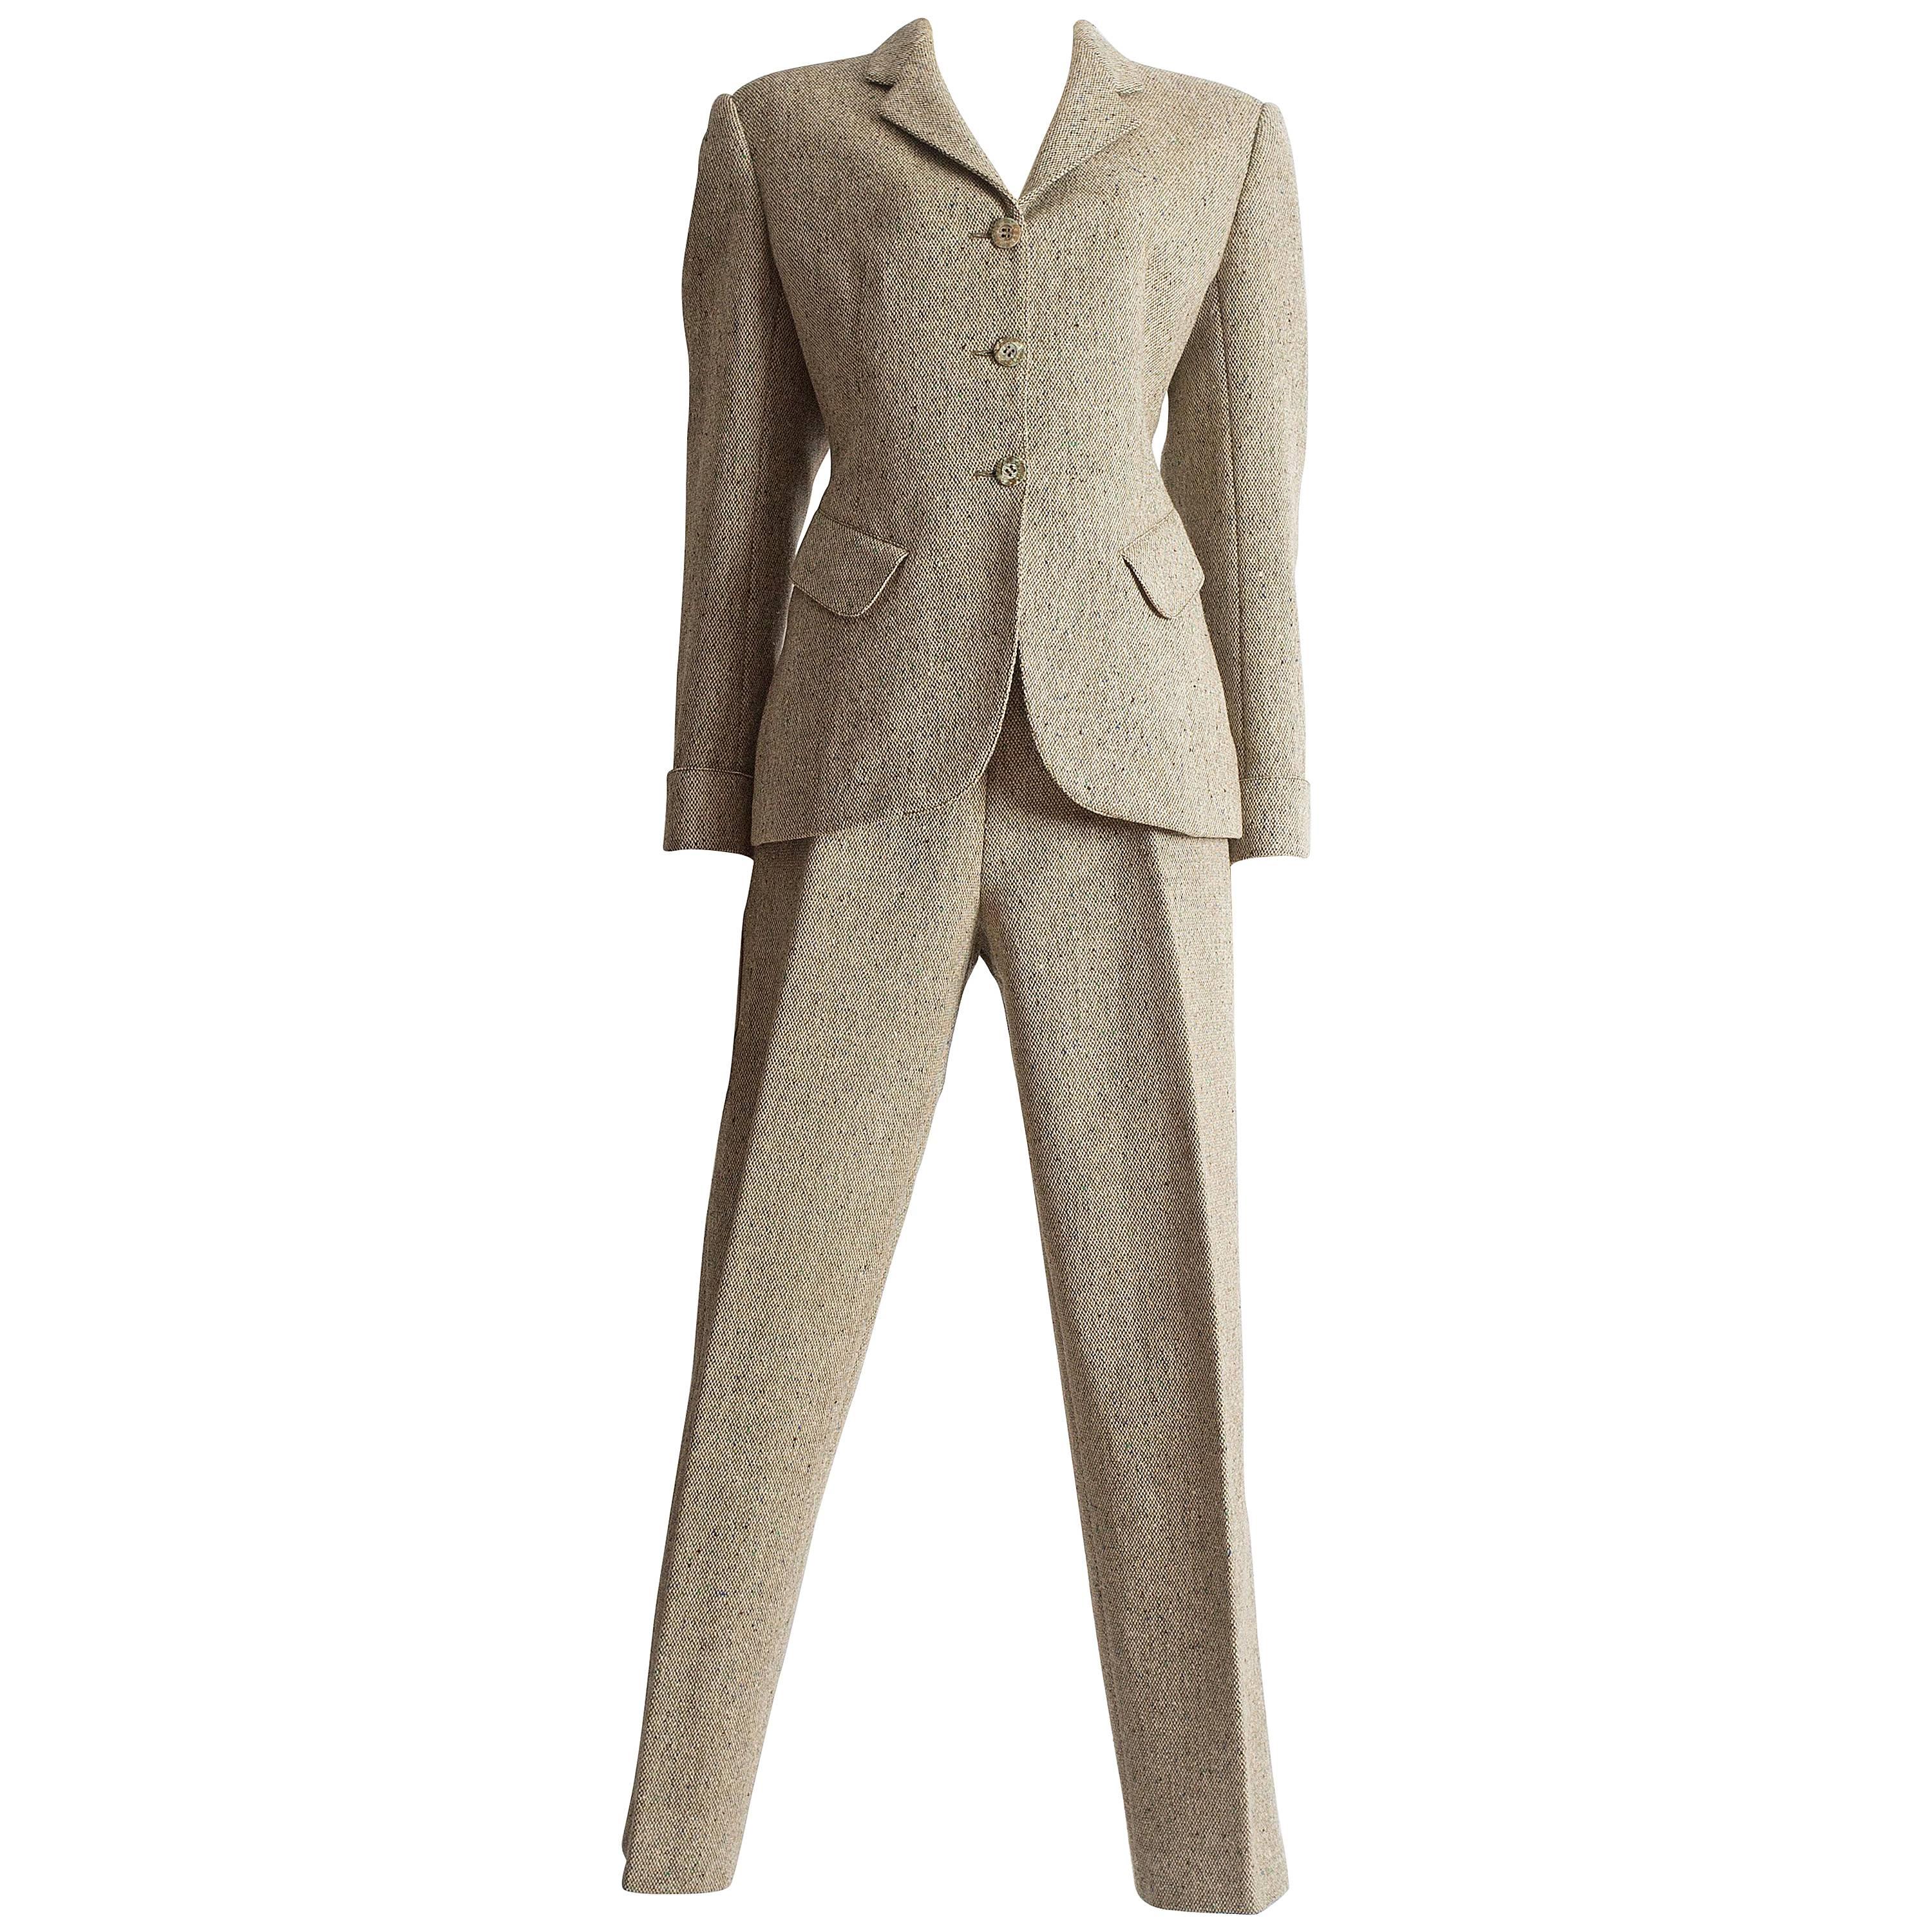 Alaia tweed pant suit, AW 1987